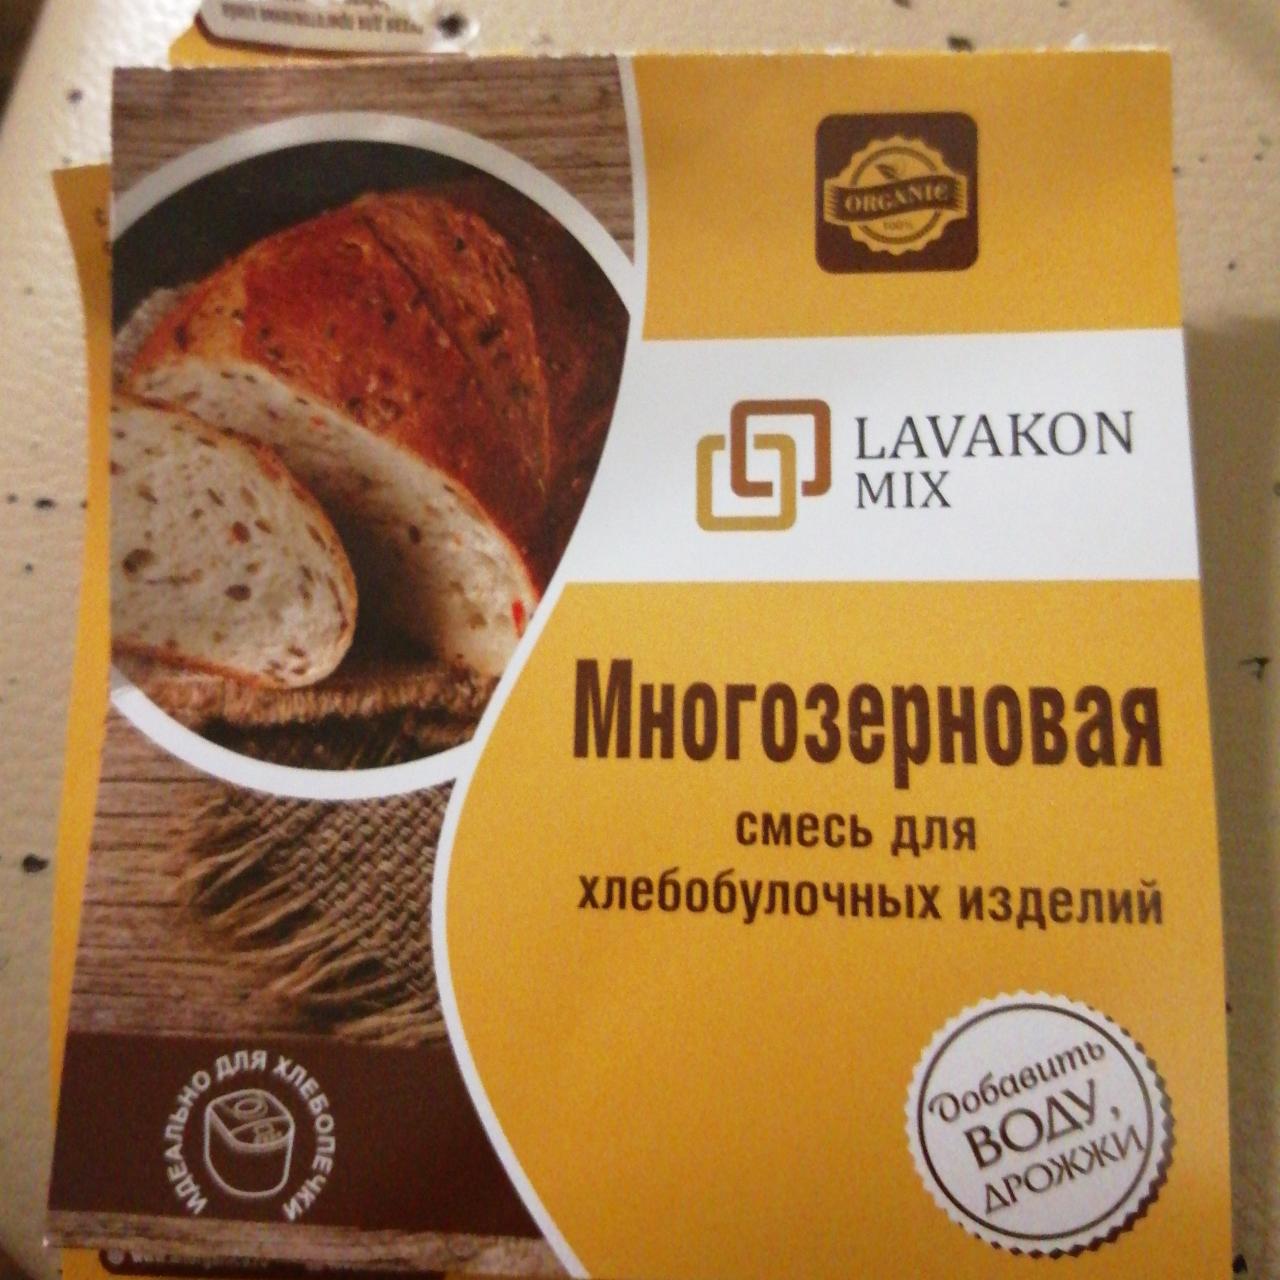 Фото - Смесь для многозернового хлеба Lavakon mix